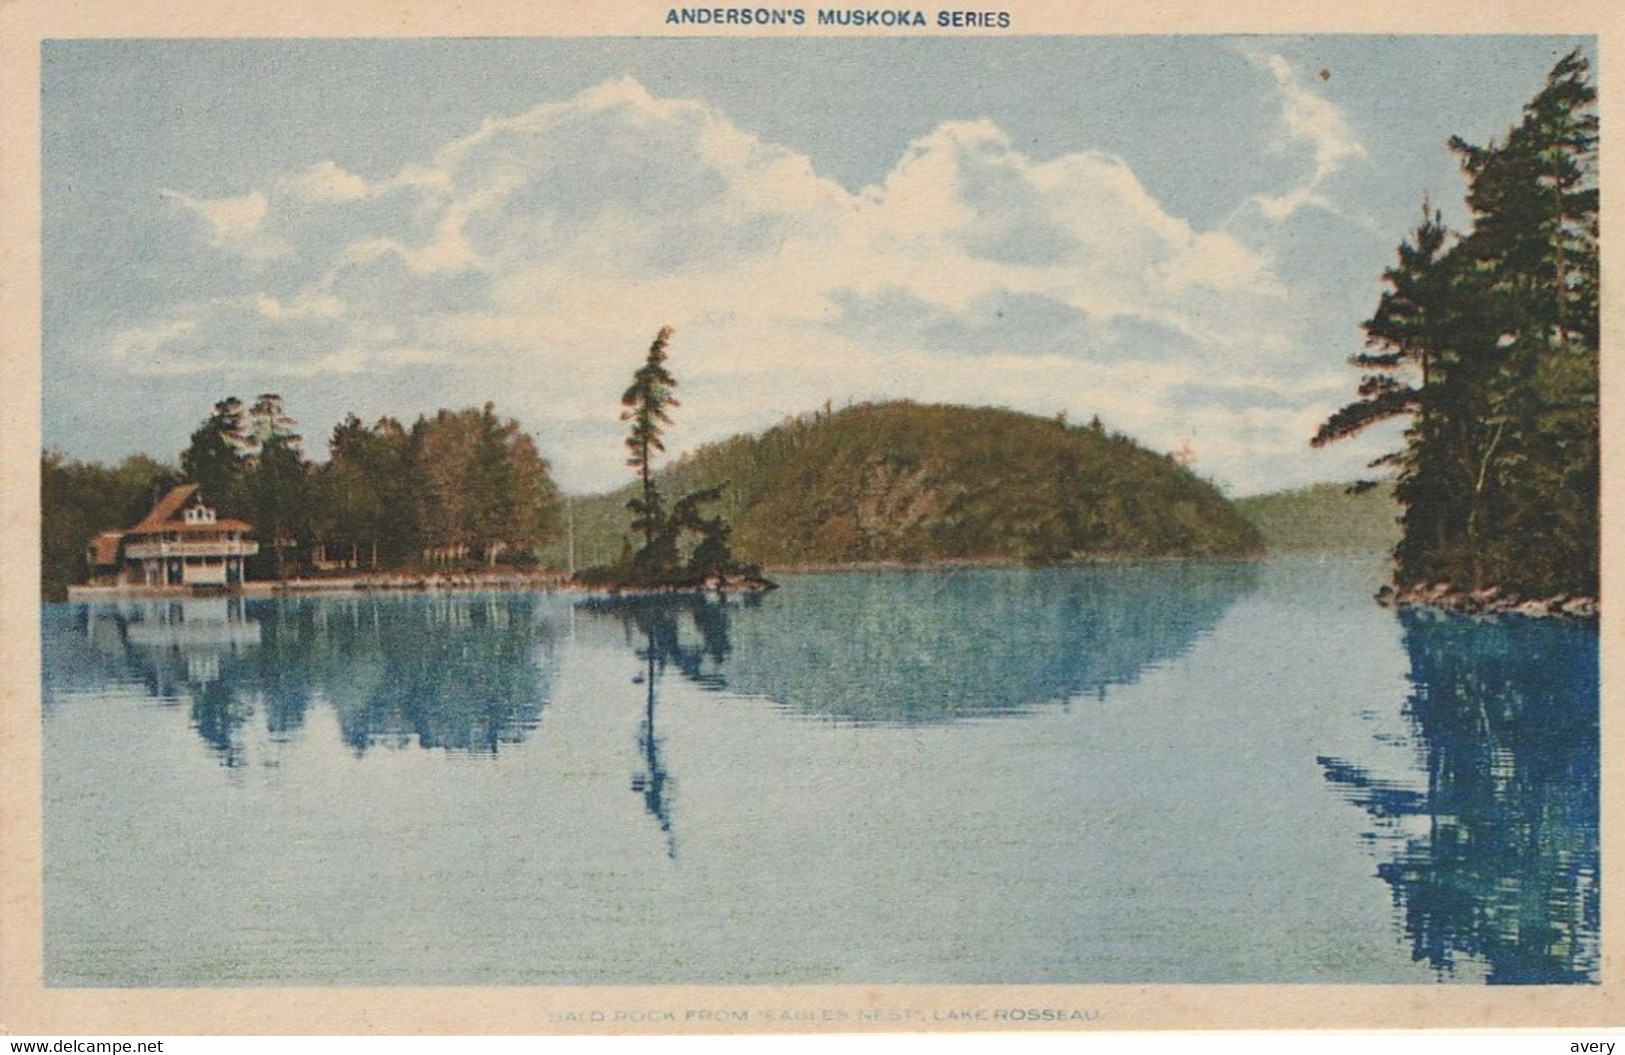 Bald Rock From Eagles Nest", Lake Rosseau, Muskoka" - Muskoka